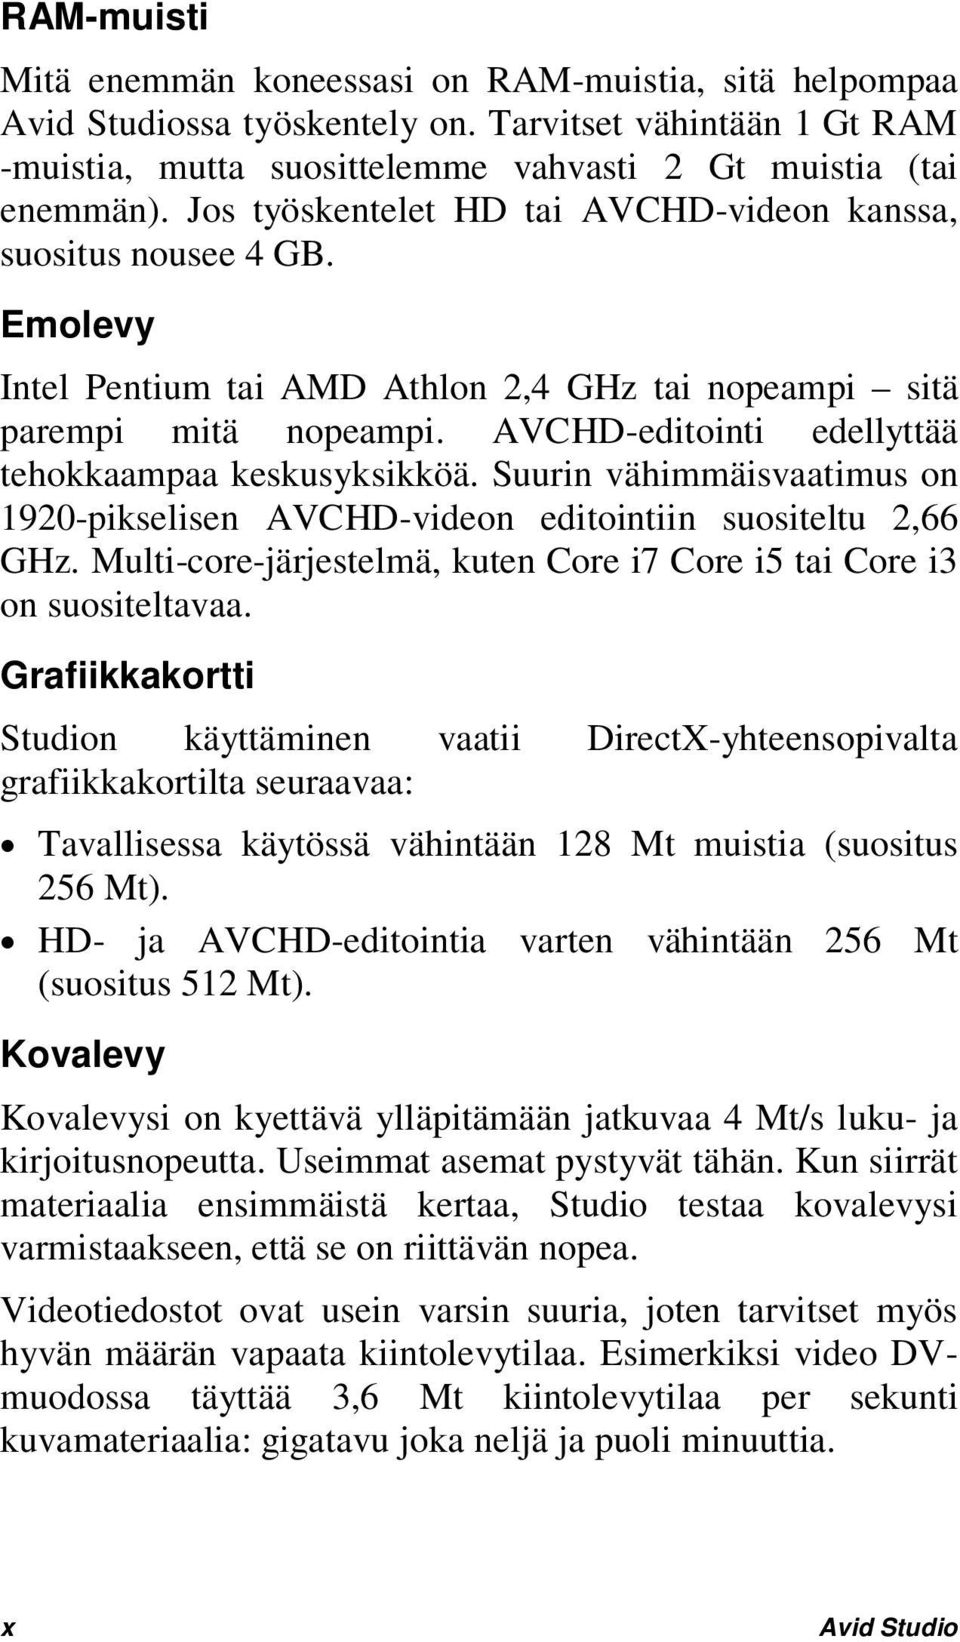 AVCHD-editointi edellyttää tehokkaampaa keskusyksikköä. Suurin vähimmäisvaatimus on 1920-pikselisen AVCHD-videon editointiin suositeltu 2,66 GHz.